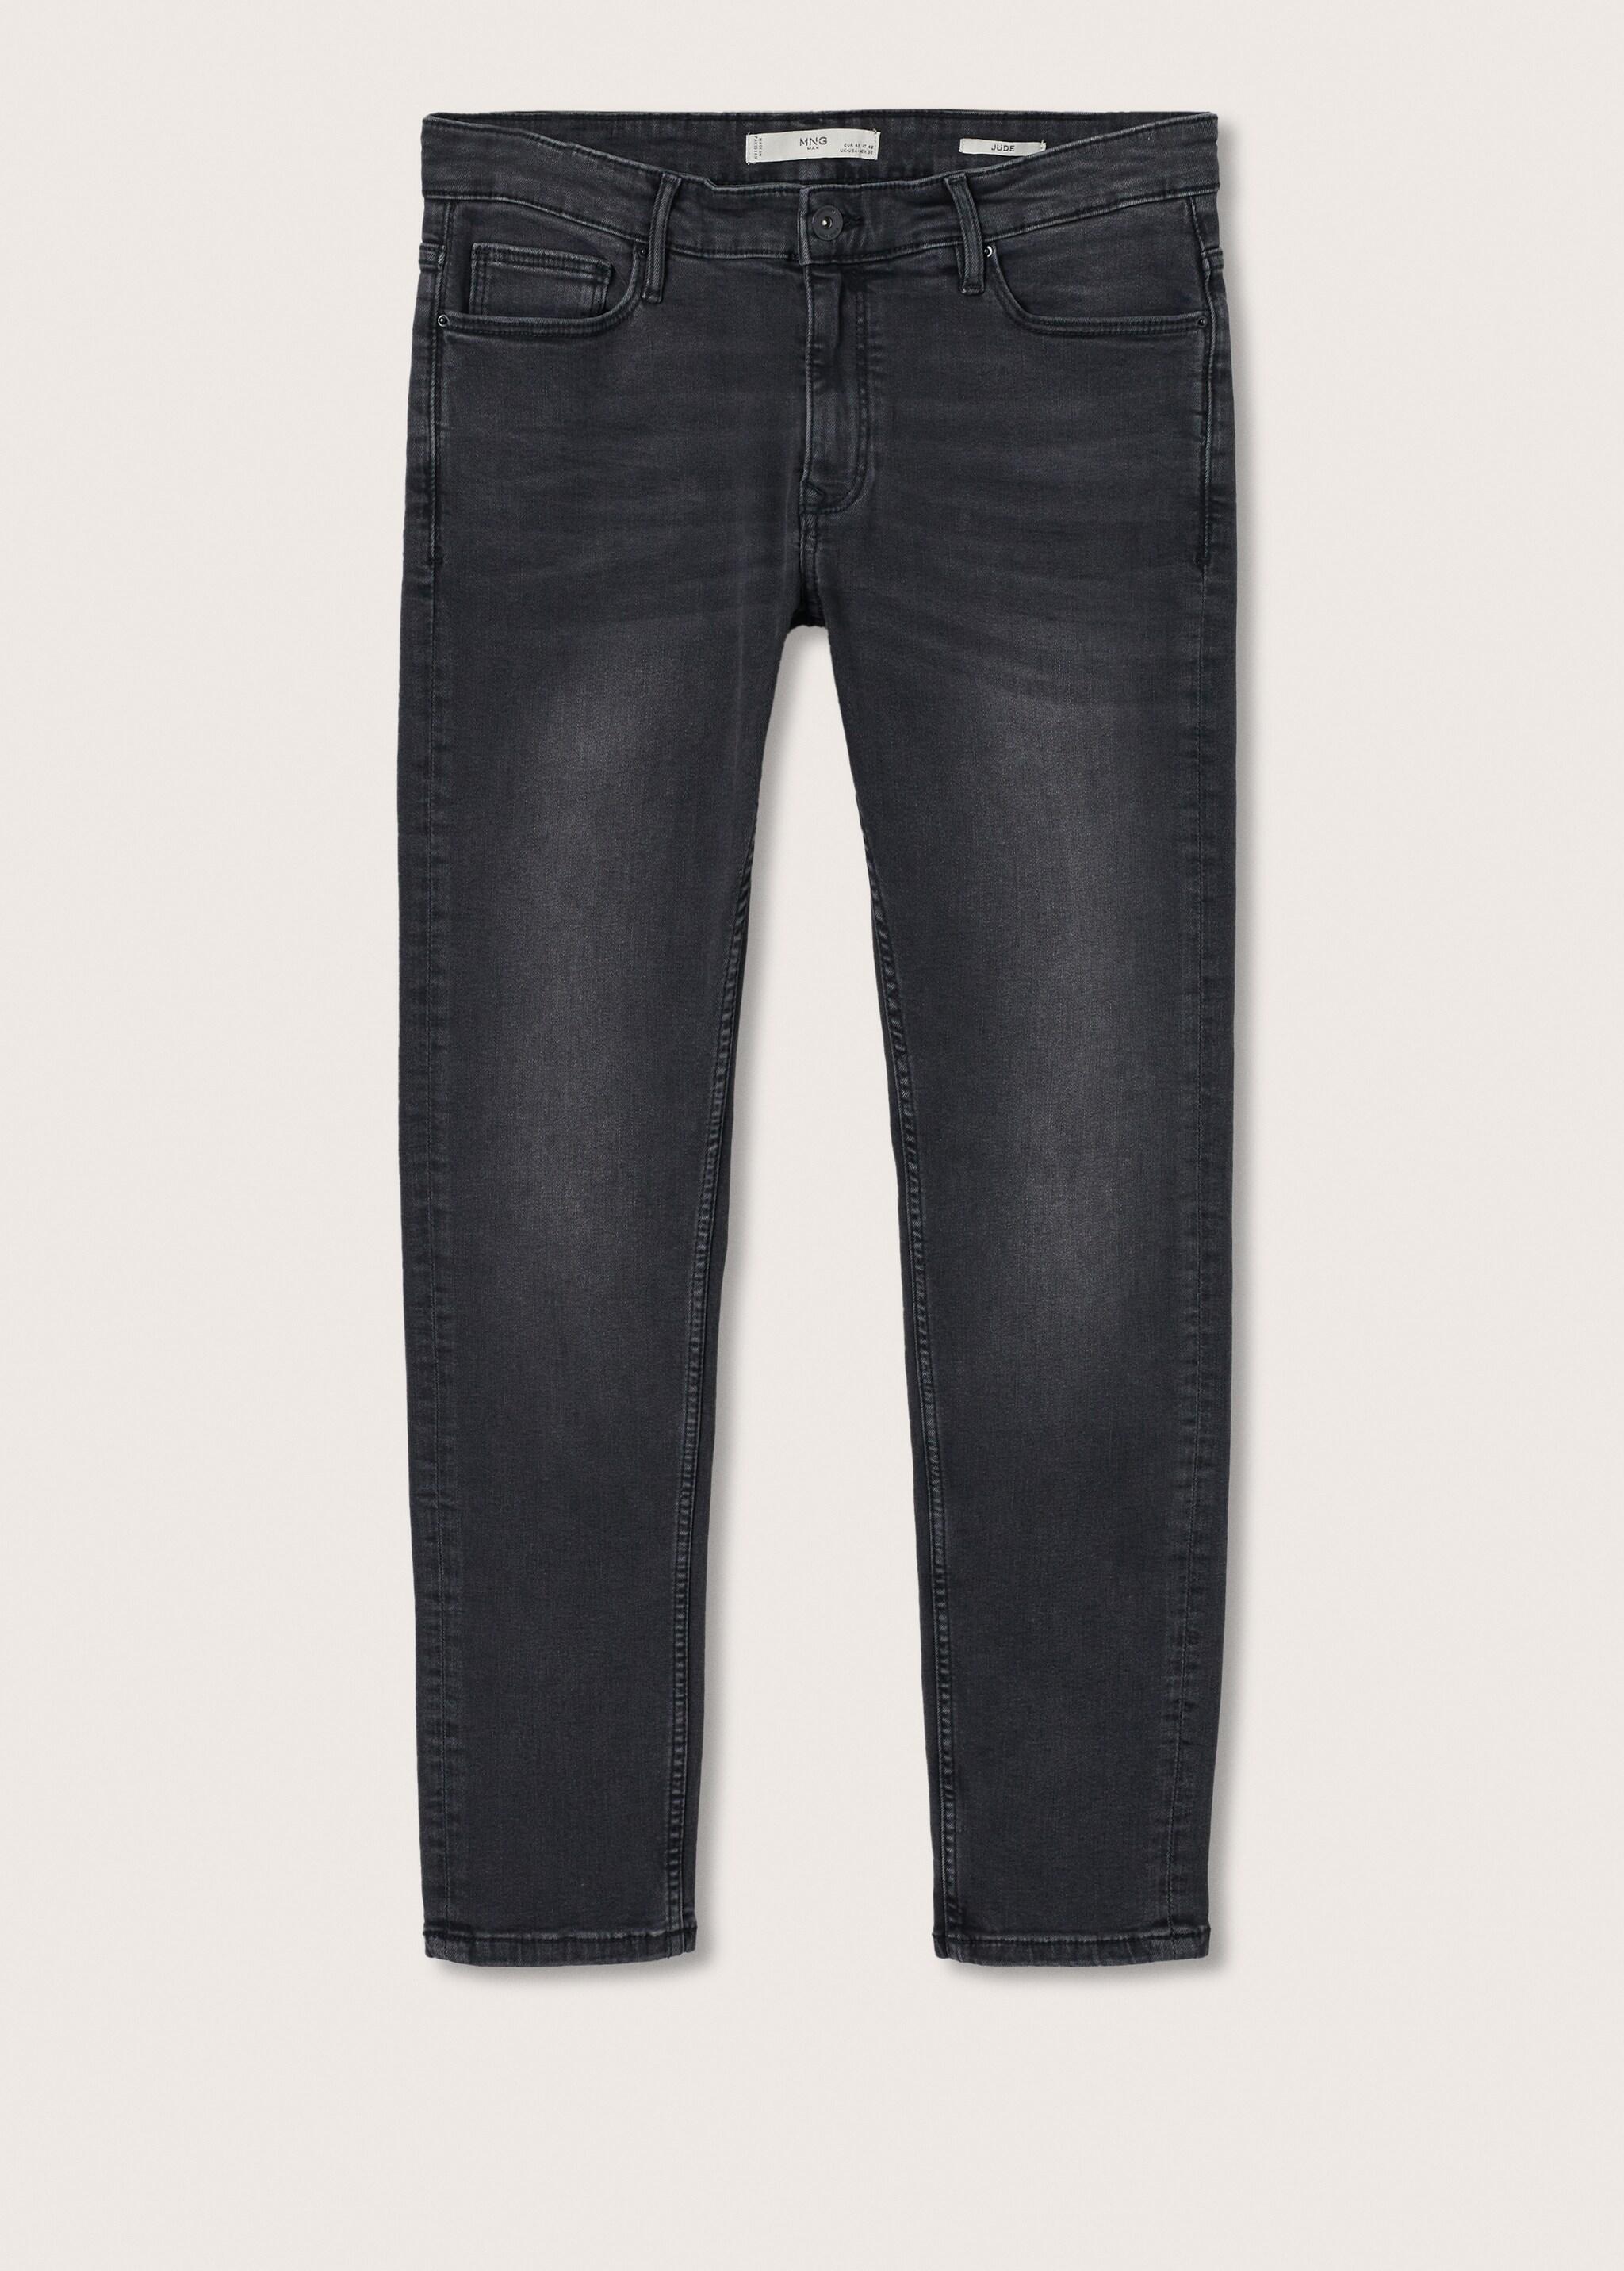 Jeans Jude skinny negros desgastados - Artículo sin modelo